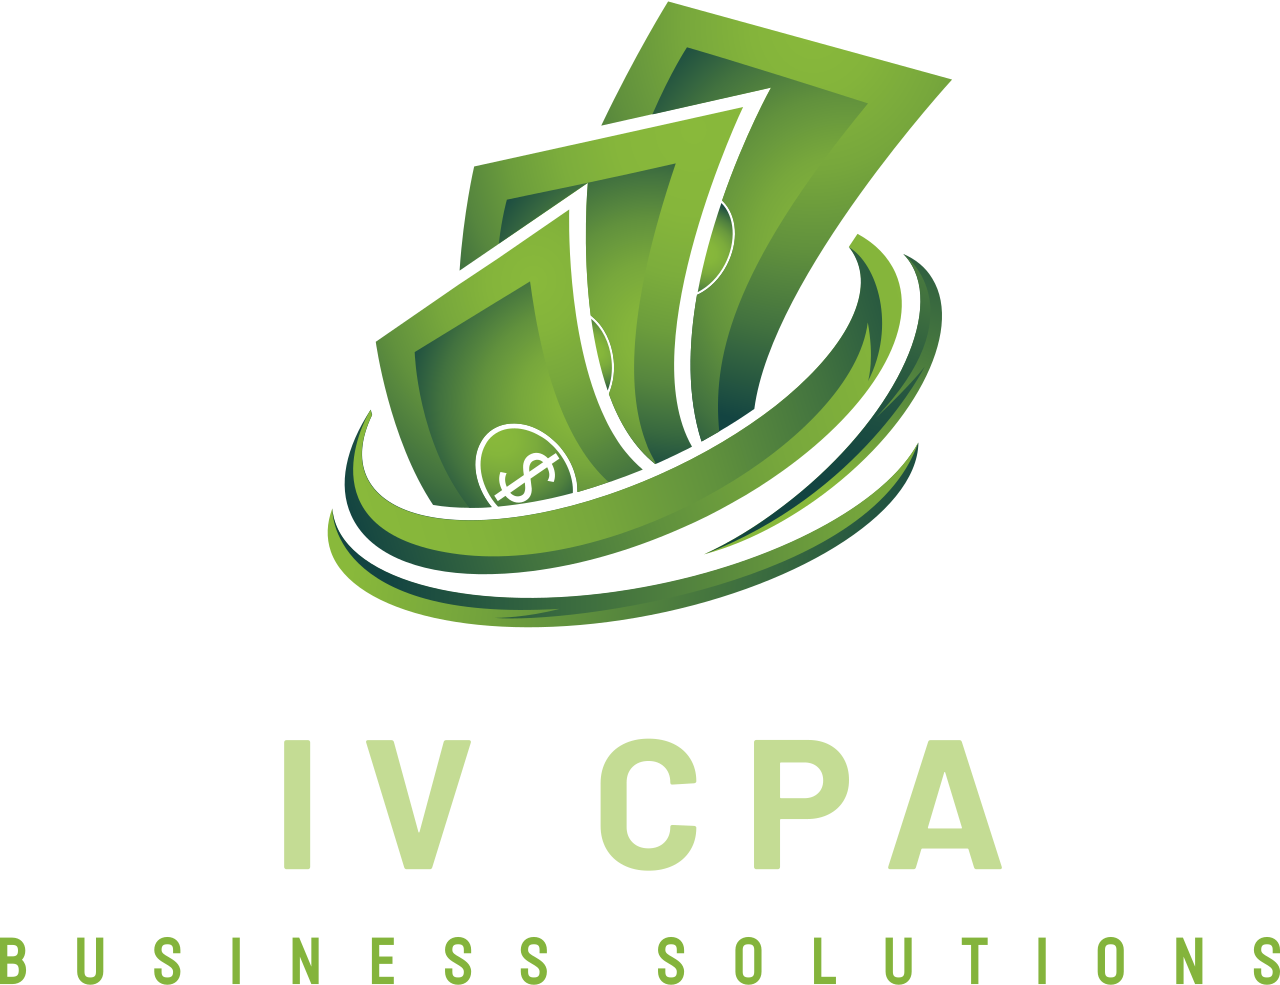 IV CPA's logo